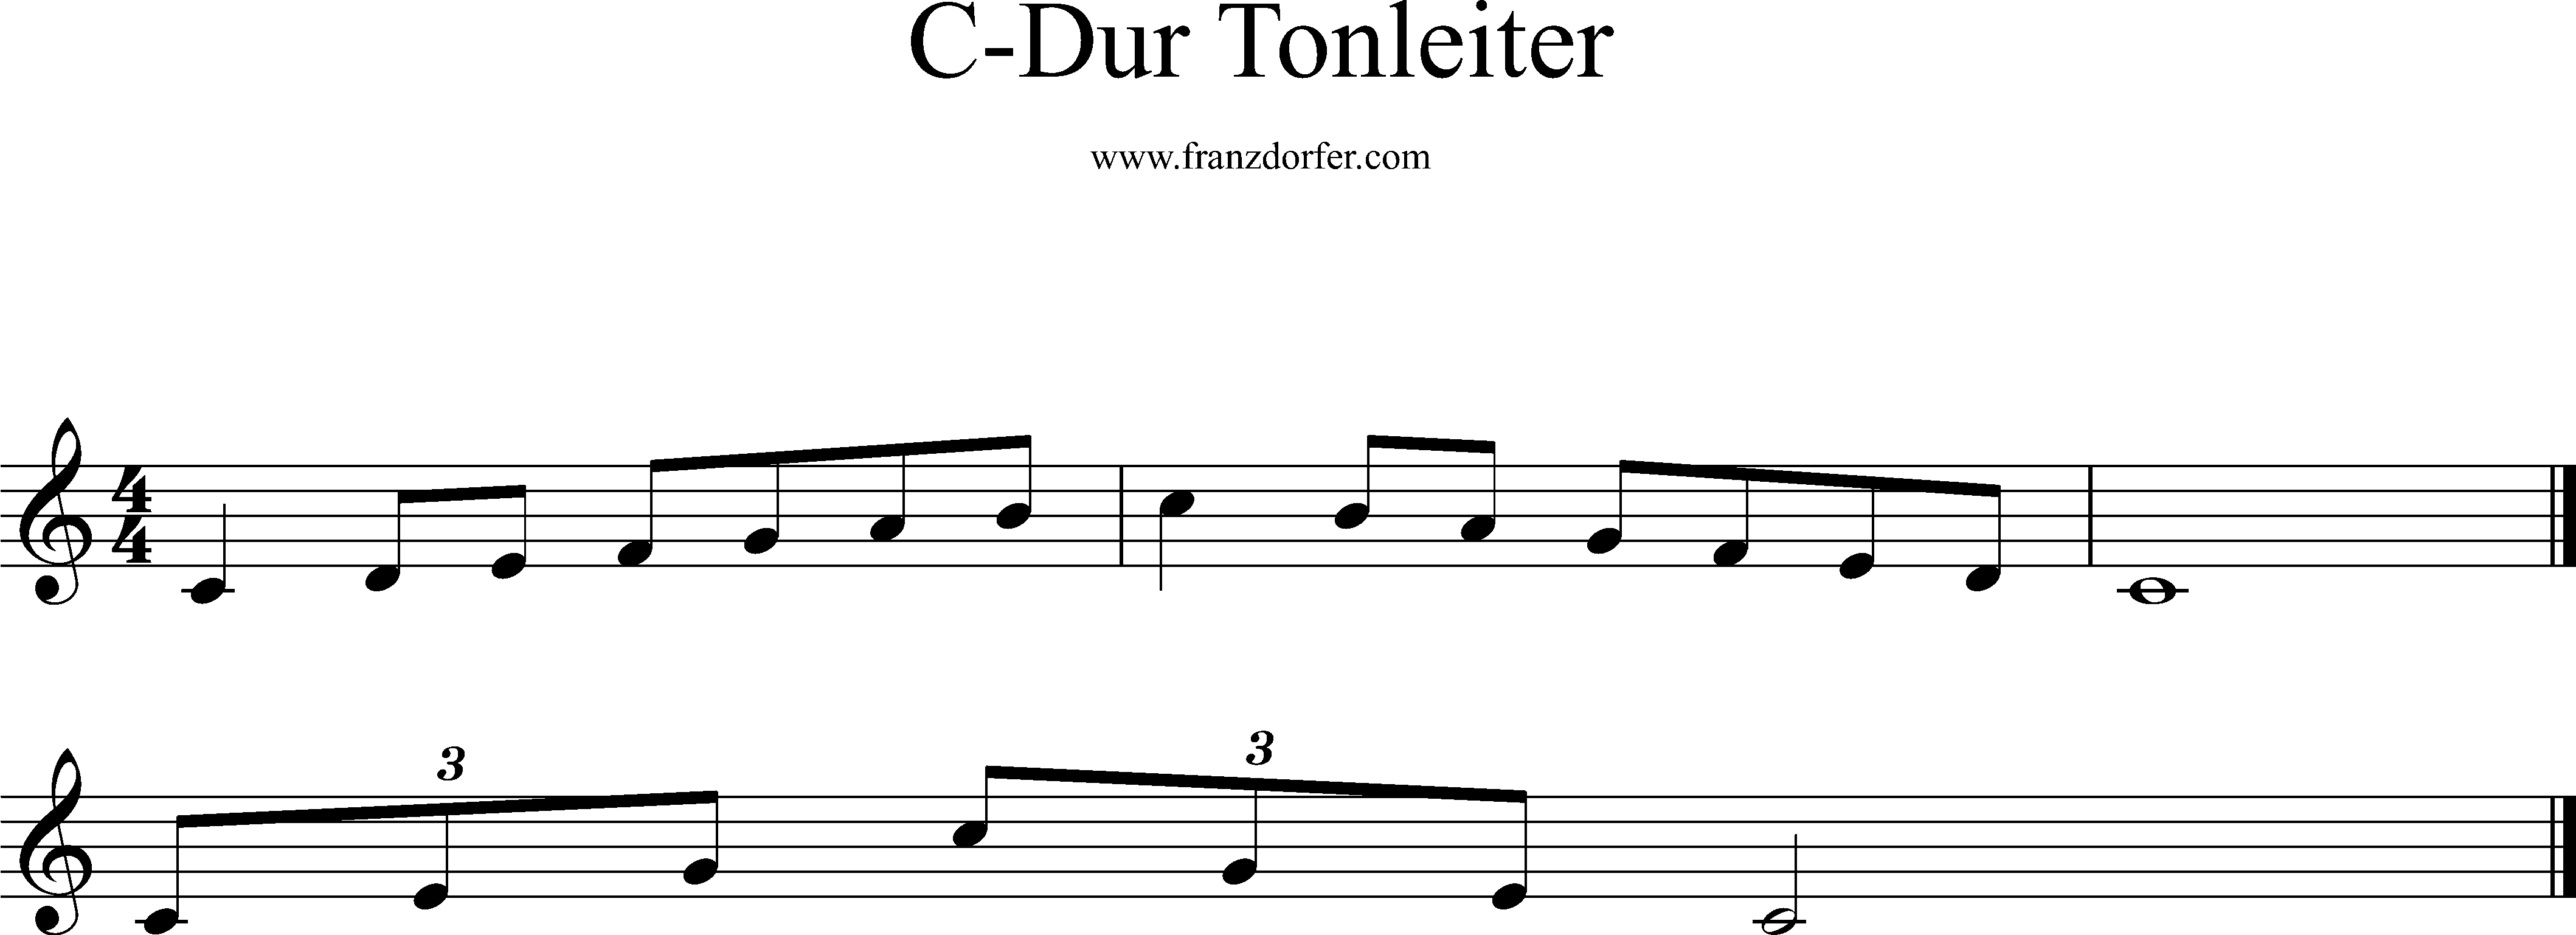 C-Dur Tonleiter, 1 Oktave, C1-c2